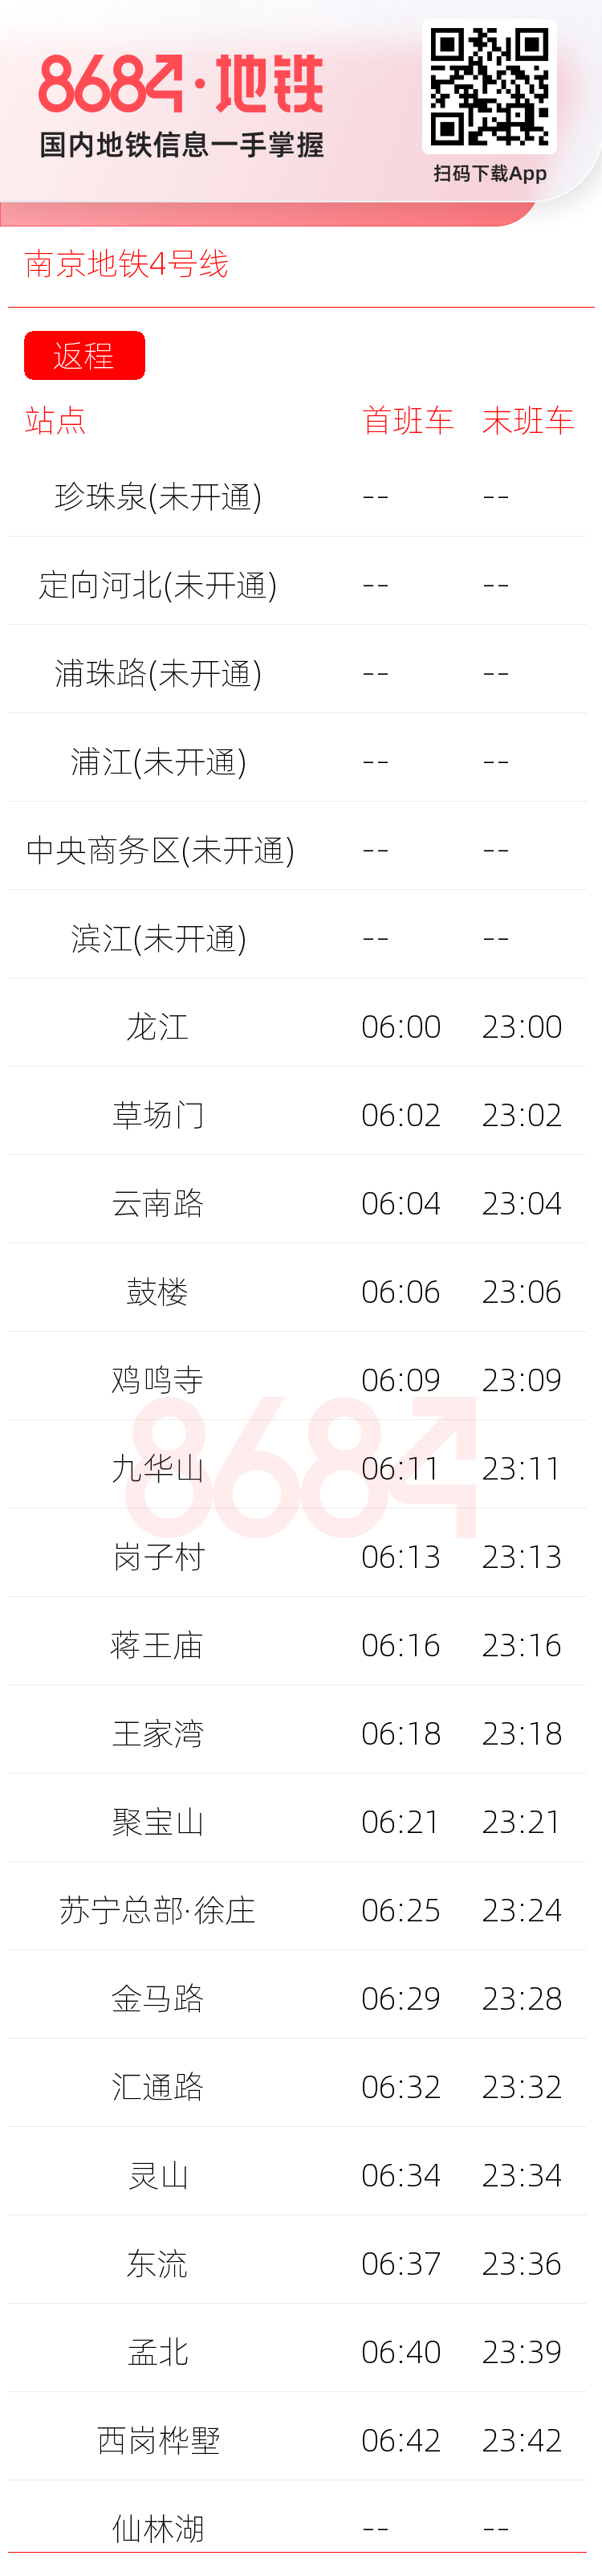 南京地铁4号线运营时间表